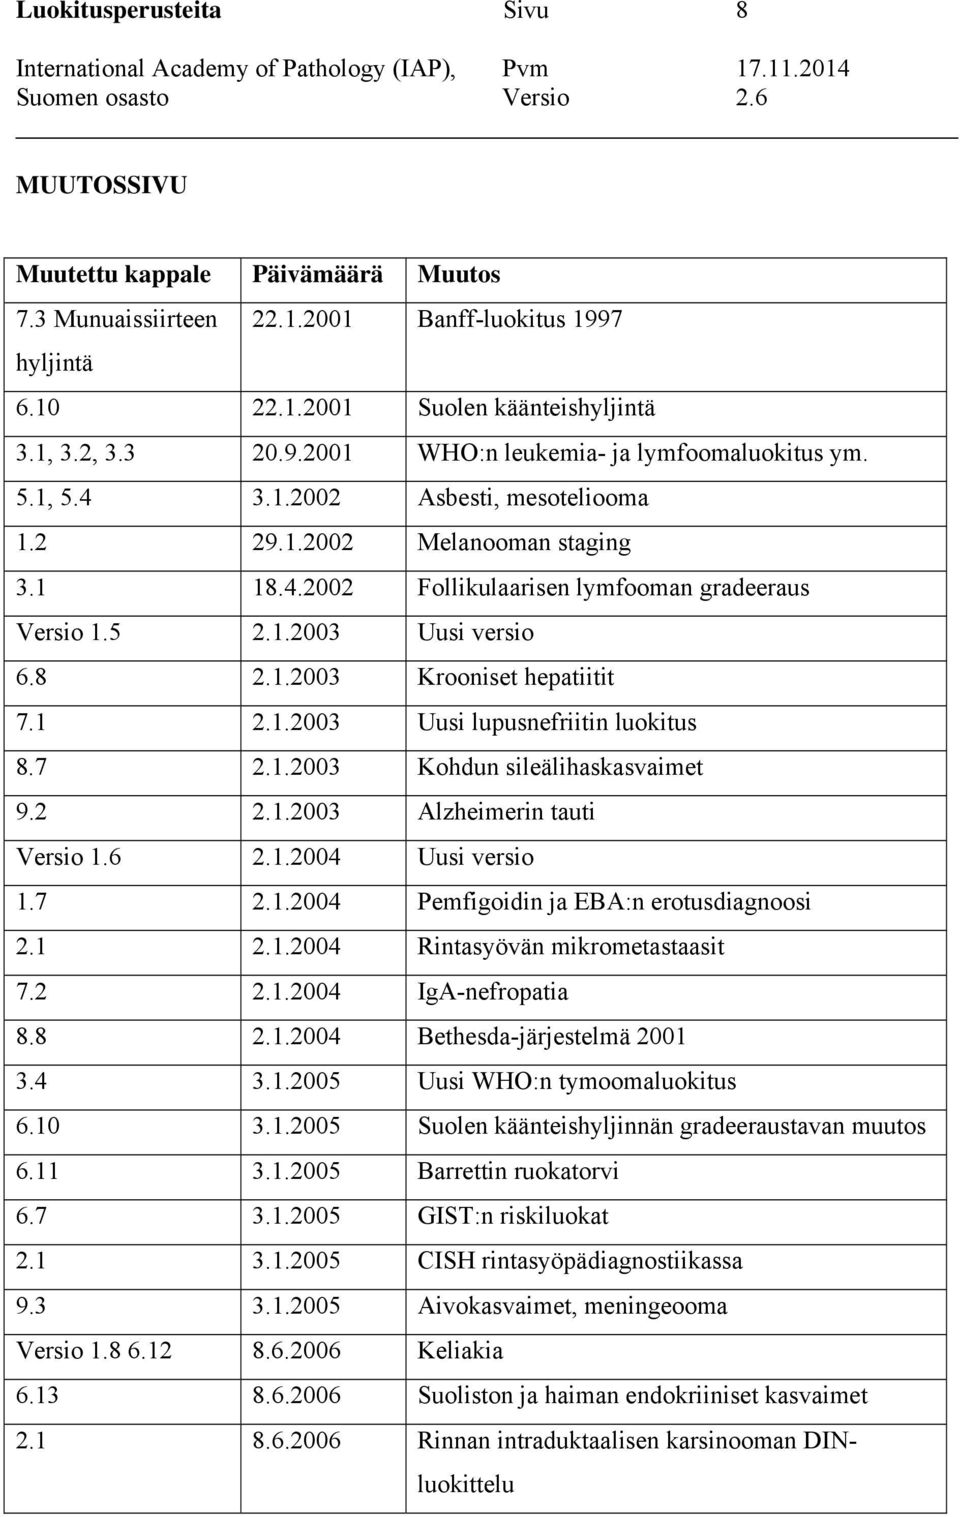 7 2.1.2003 Kohdun sileälihaskasvaimet 9.2 2.1.2003 Alzheimerin tauti Versio 1.6 2.1.2004 Uusi versio 1.7 2.1.2004 Pemfigoidin ja EBA:n erotusdiagnoosi 2.1 2.1.2004 Rintasyövän mikrometastaasit 7.2 2.1.2004 IgA-nefropatia 8.